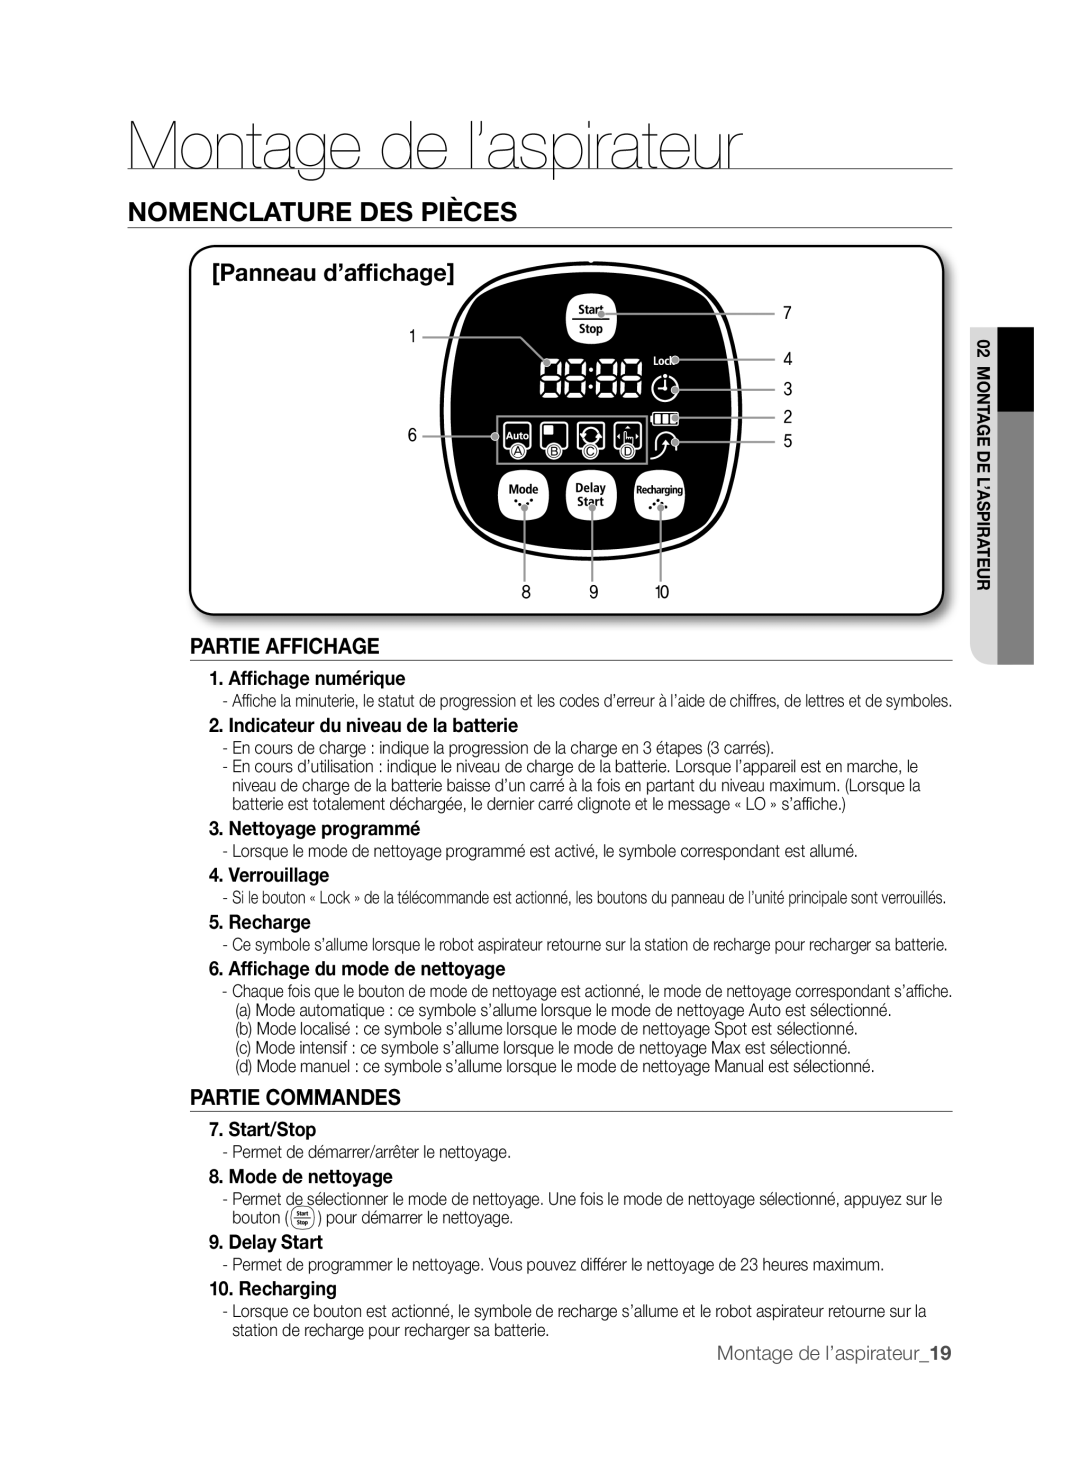 Samsung DJ68-00518A, VCR8830T1R Partie Affichage, Partie Commandes, Montage de l’aspirateur, Nomenclature Des Pièces 